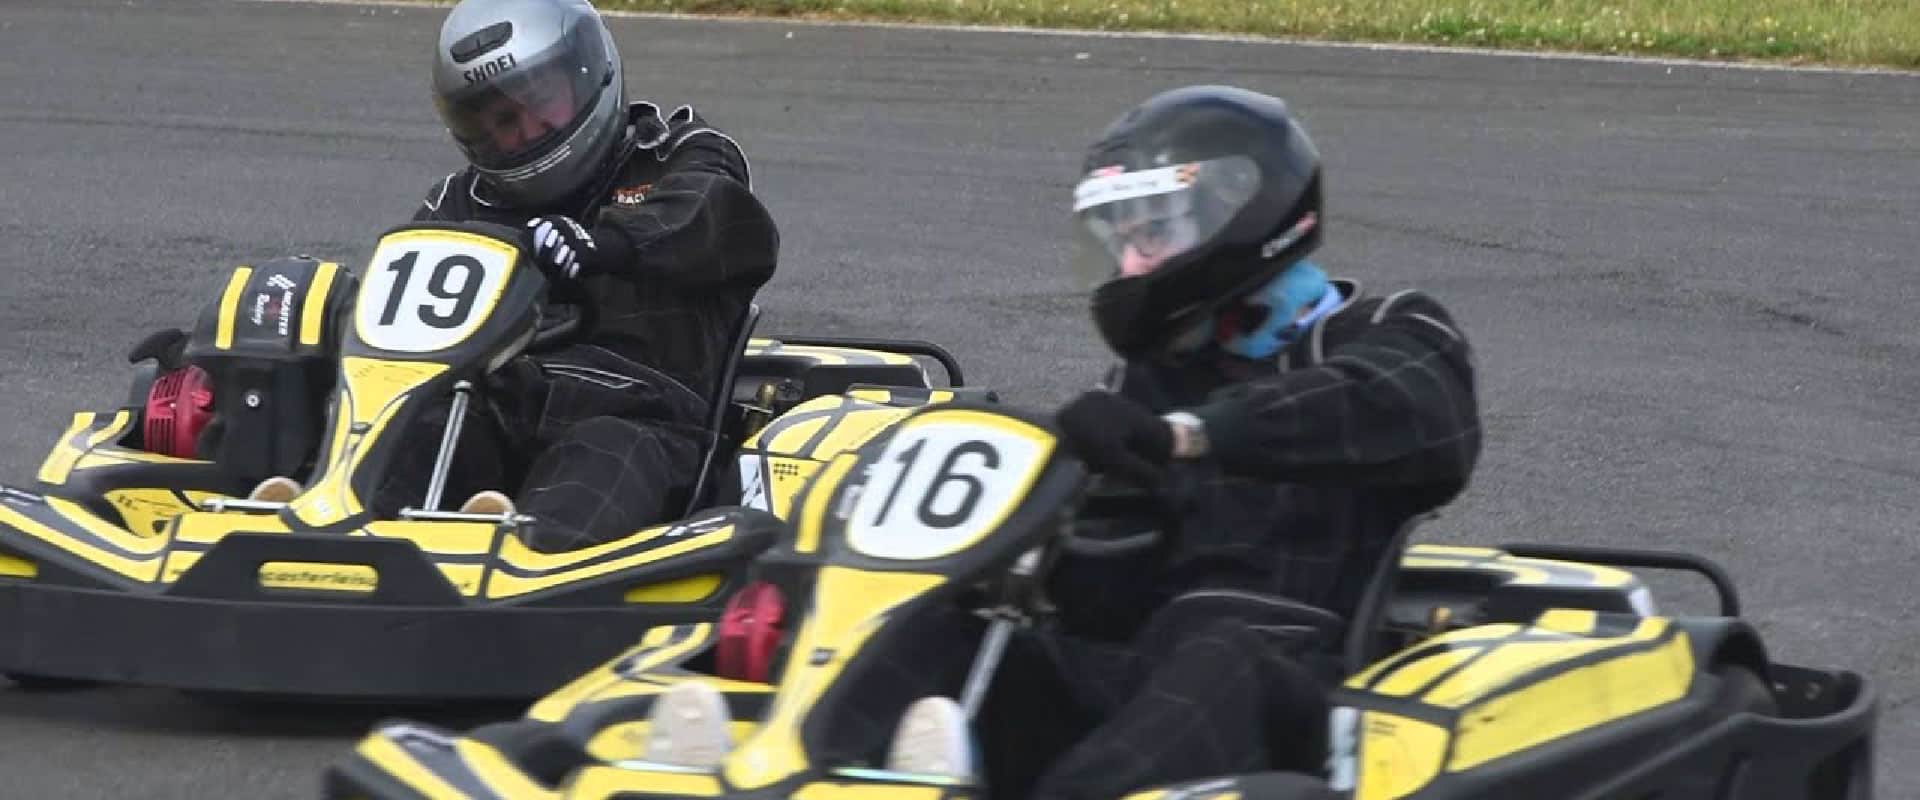 Ancaster Kart Racing Circuit in UK